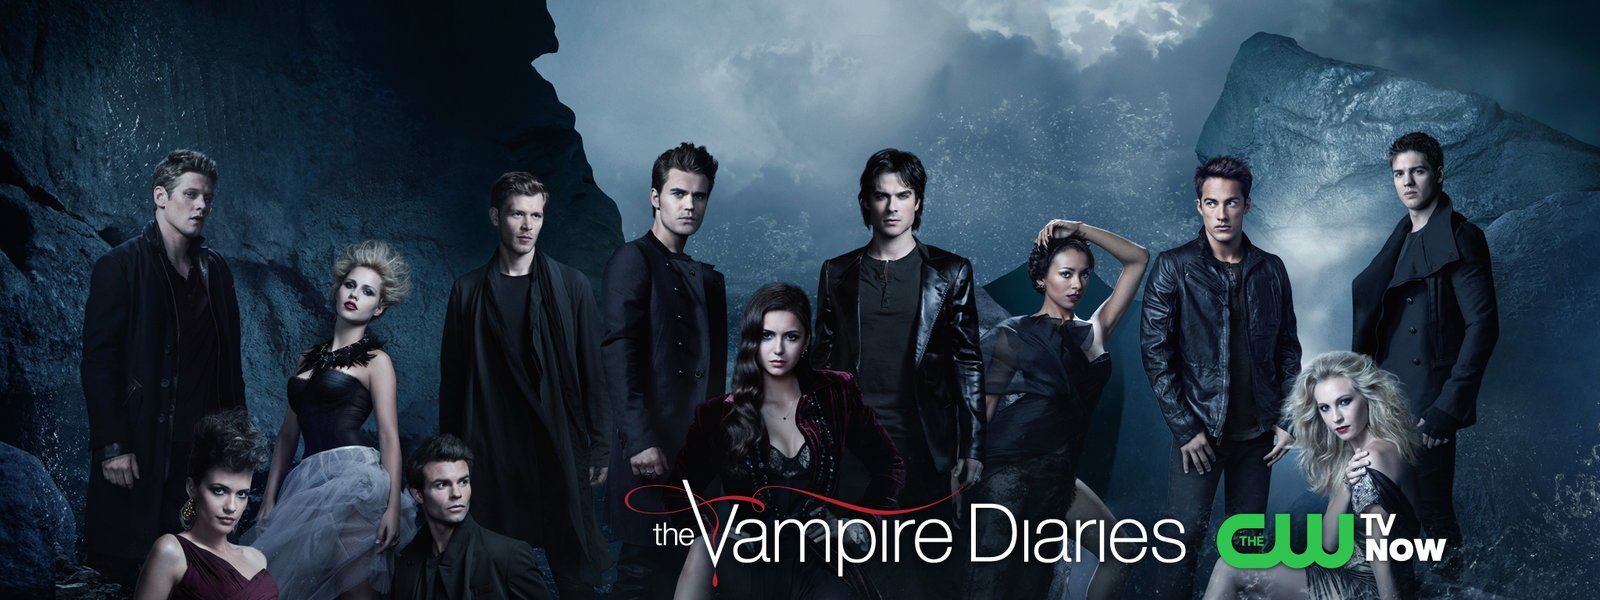 Vampire Diaries Whole Cast Wallpaper .wallpaperafari.com